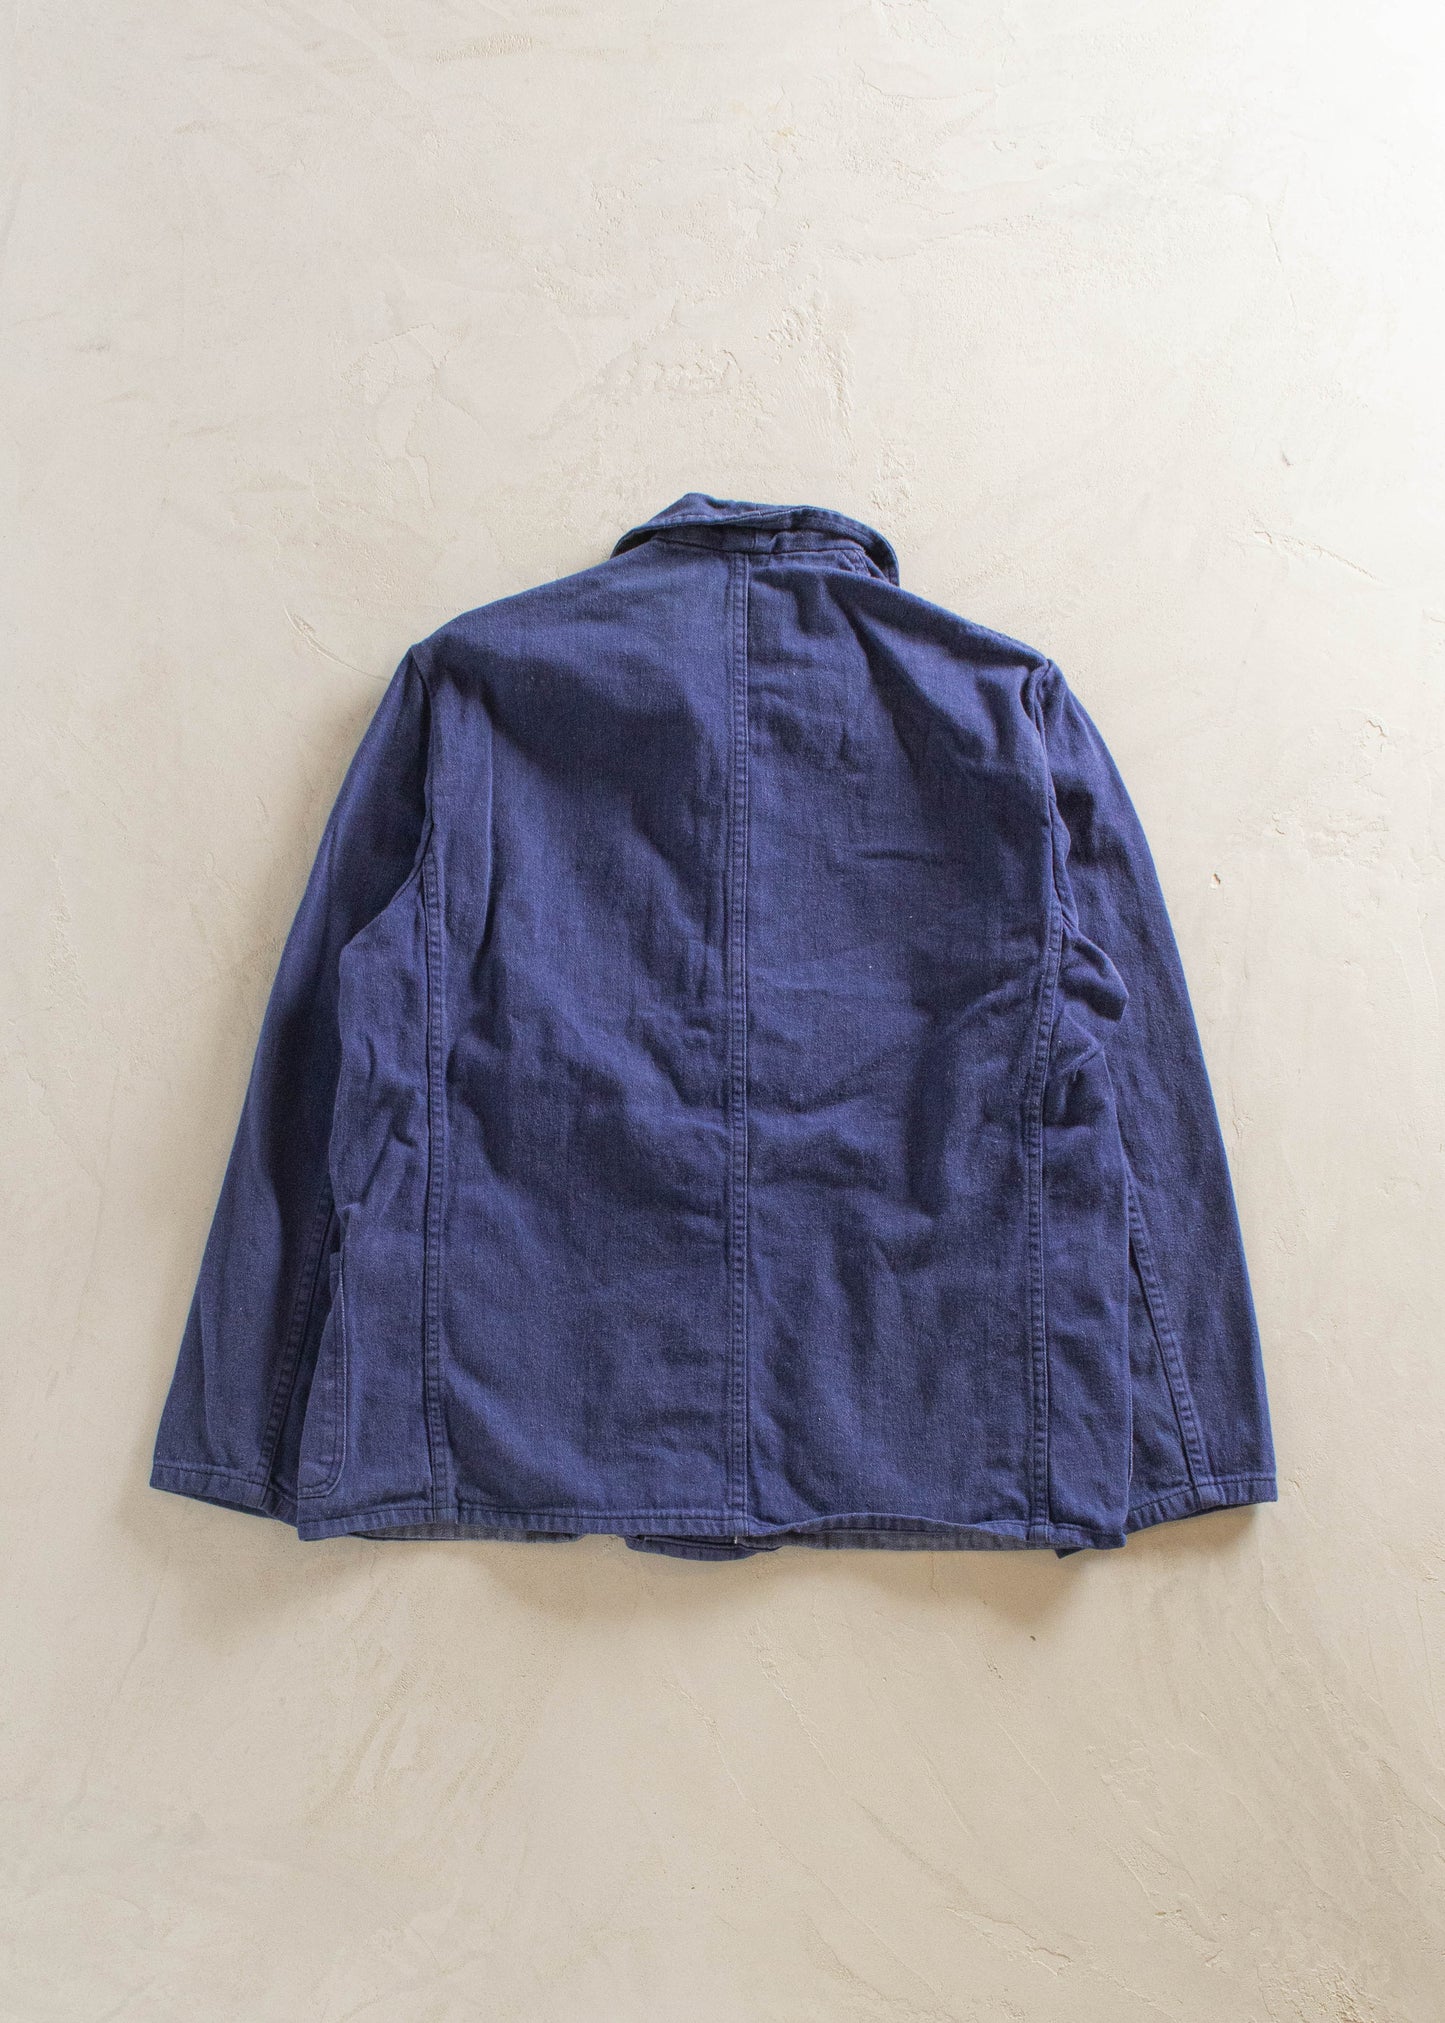 1980s Kuno French Workwear Chore Jacket Size XS/S